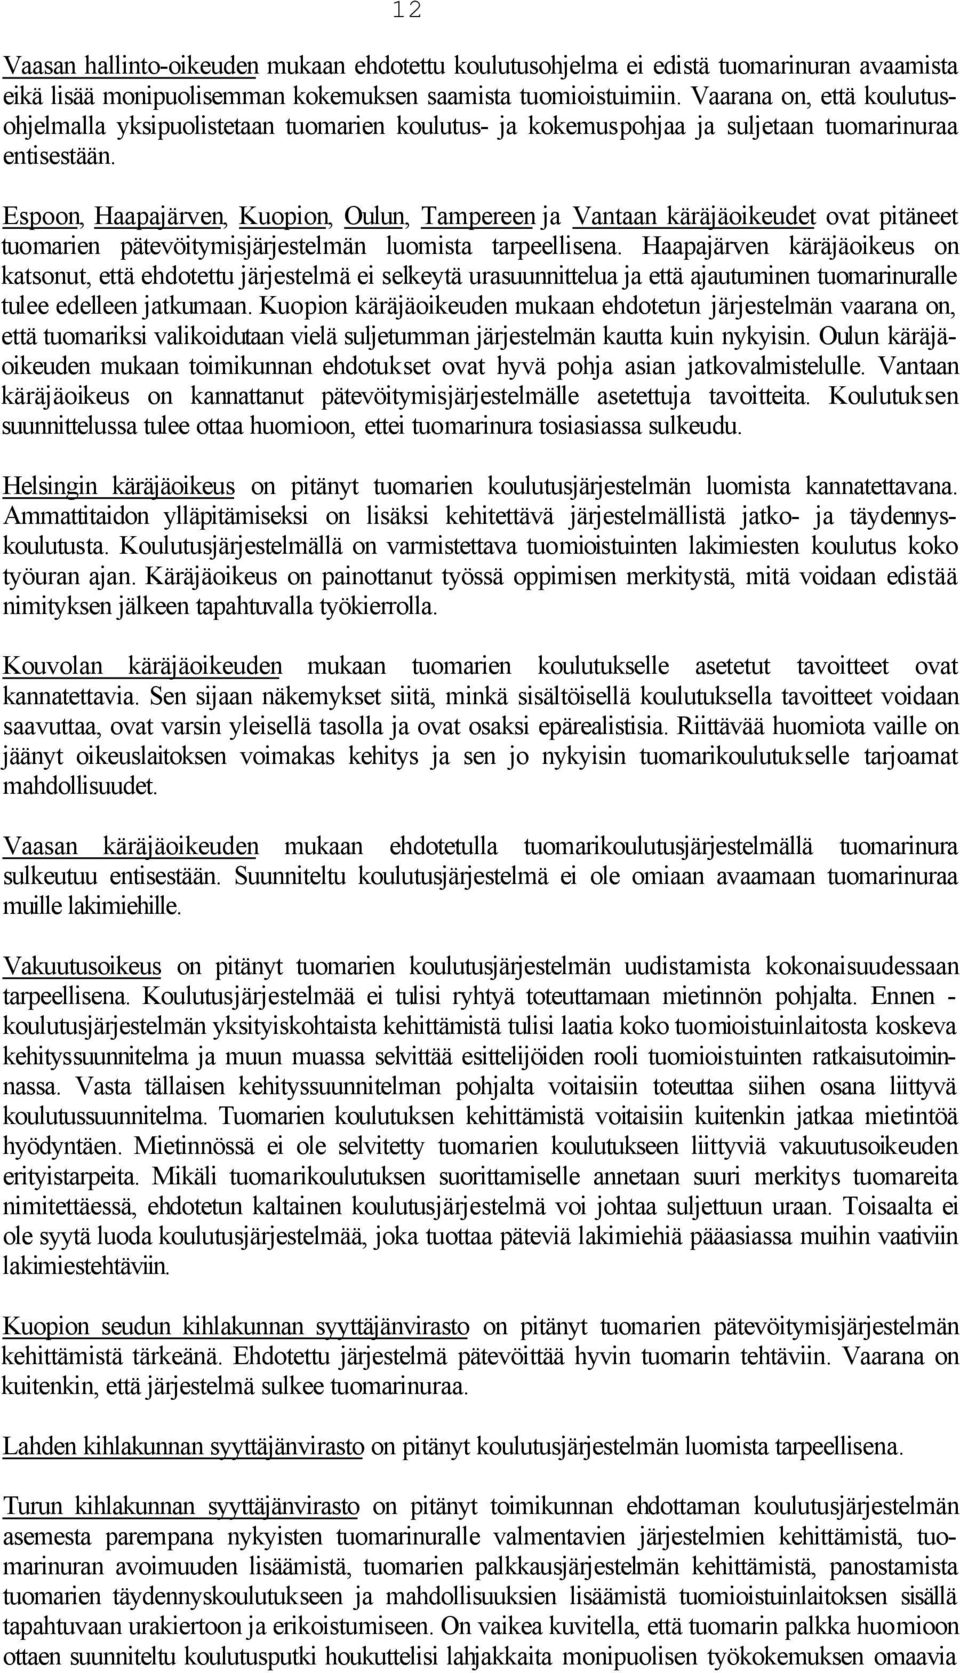 Espoon, Haapajärven, Kuopion, Oulun, Tampereen ja Vantaan käräjäoikeudet ovat pitäneet tuomarien pätevöitymisjärjestelmän luomista tarpeellisena.